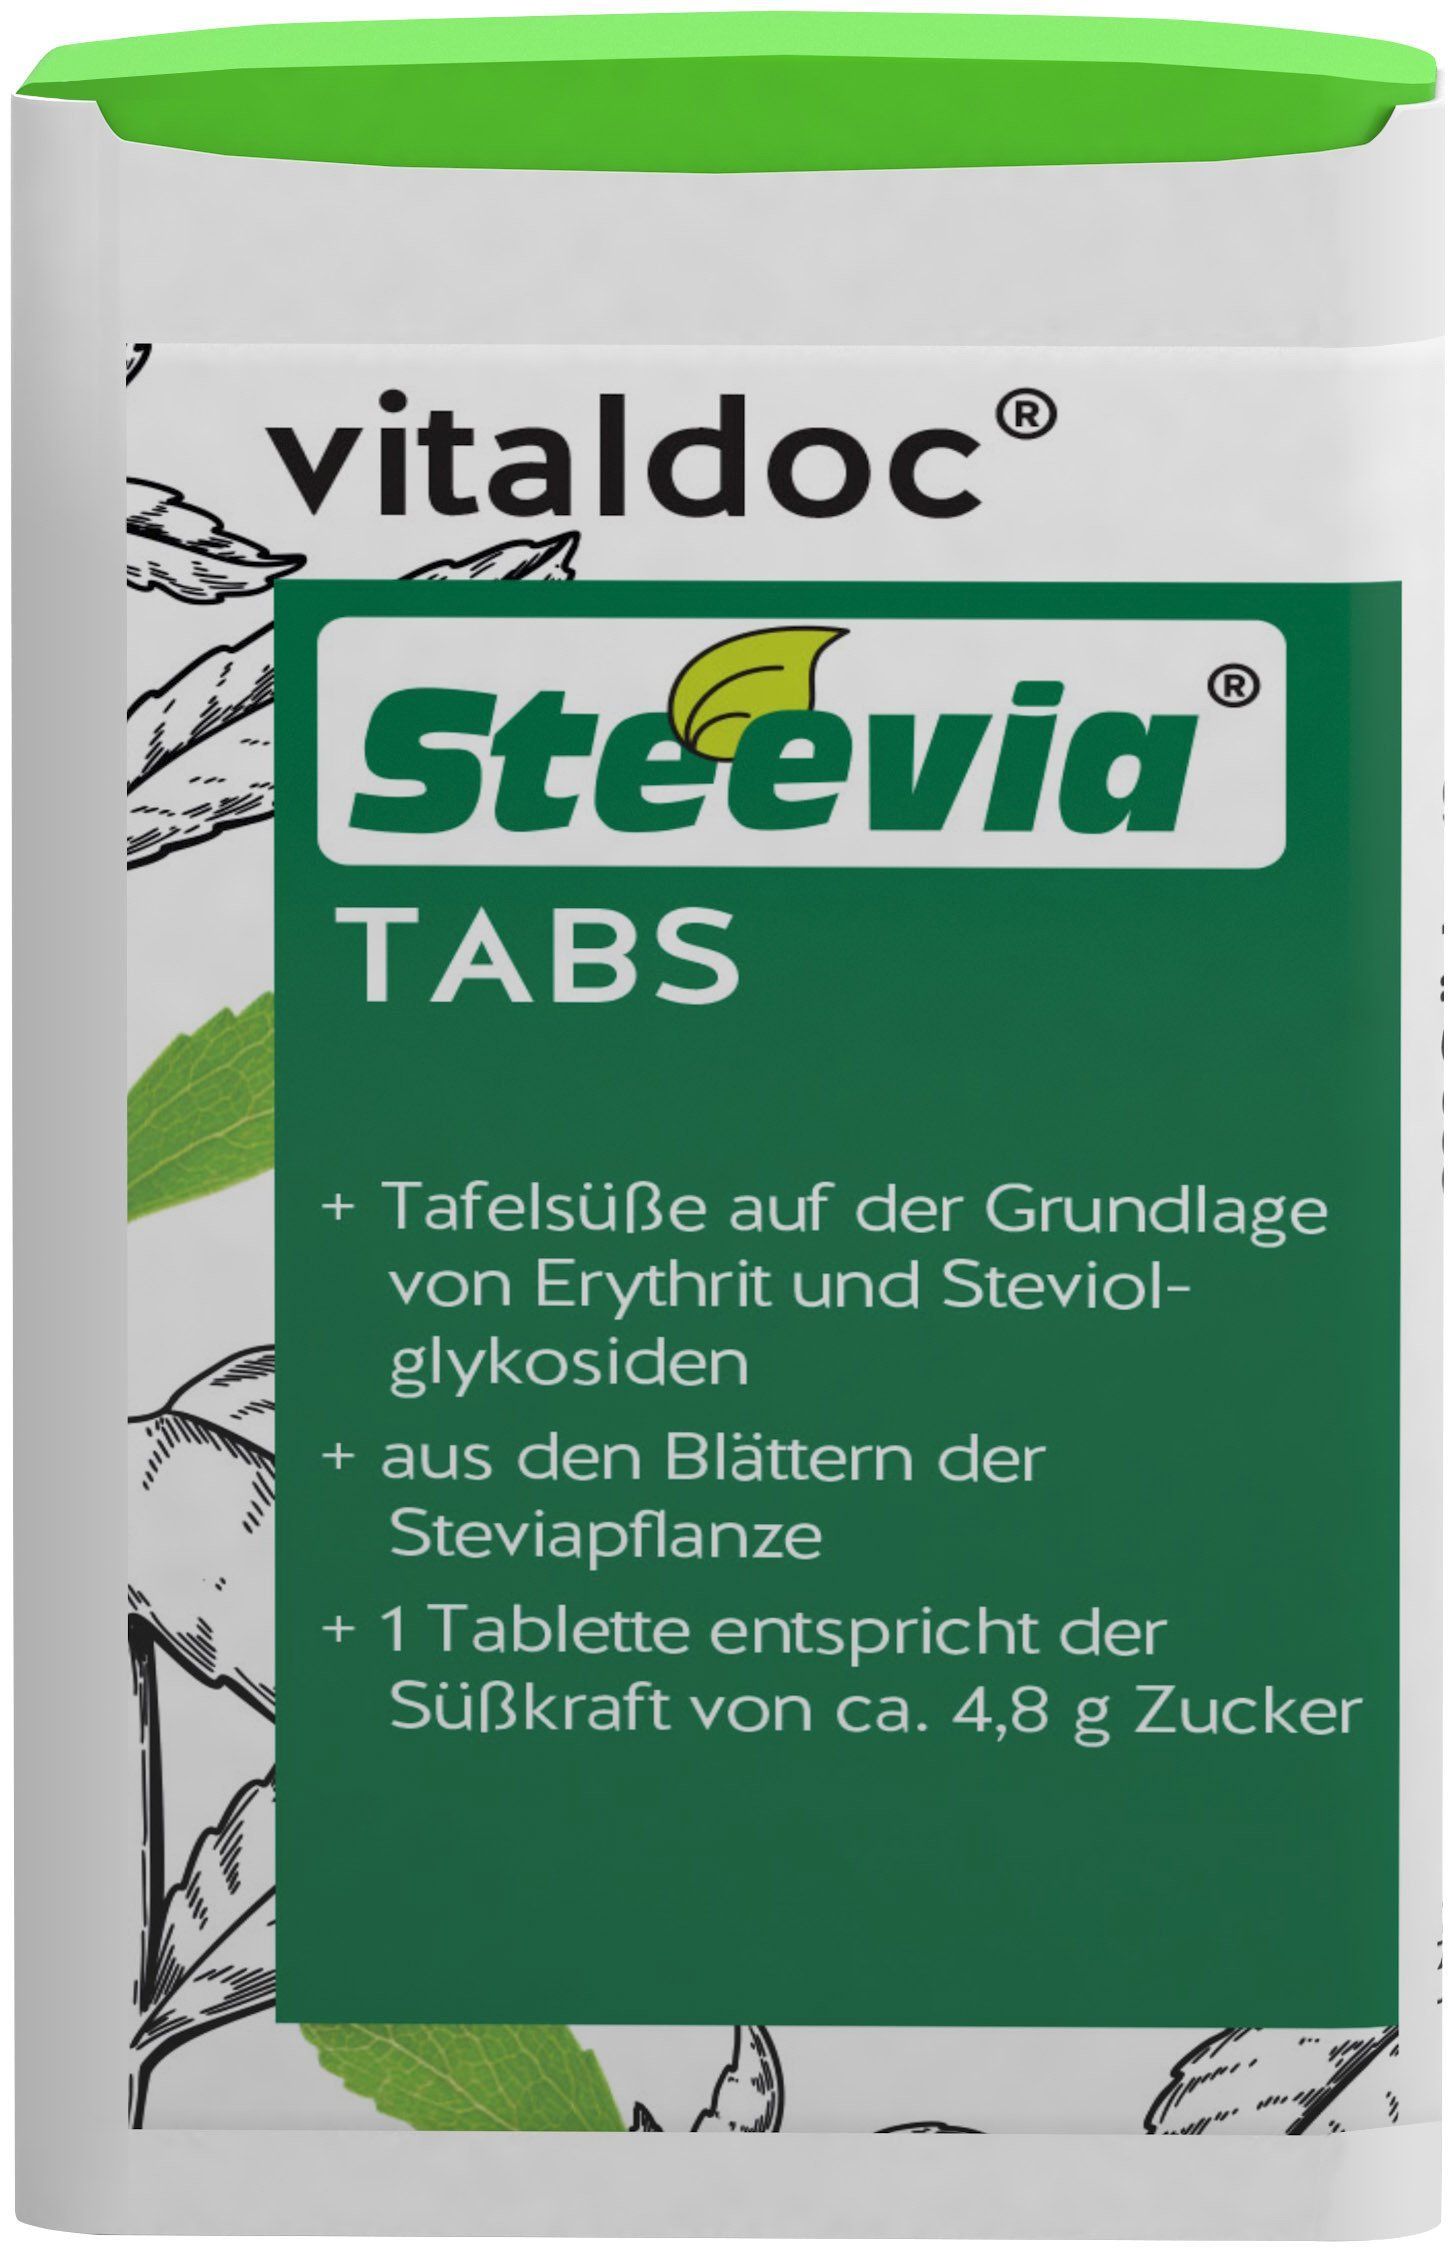 vitaldoc® Steevia TABS